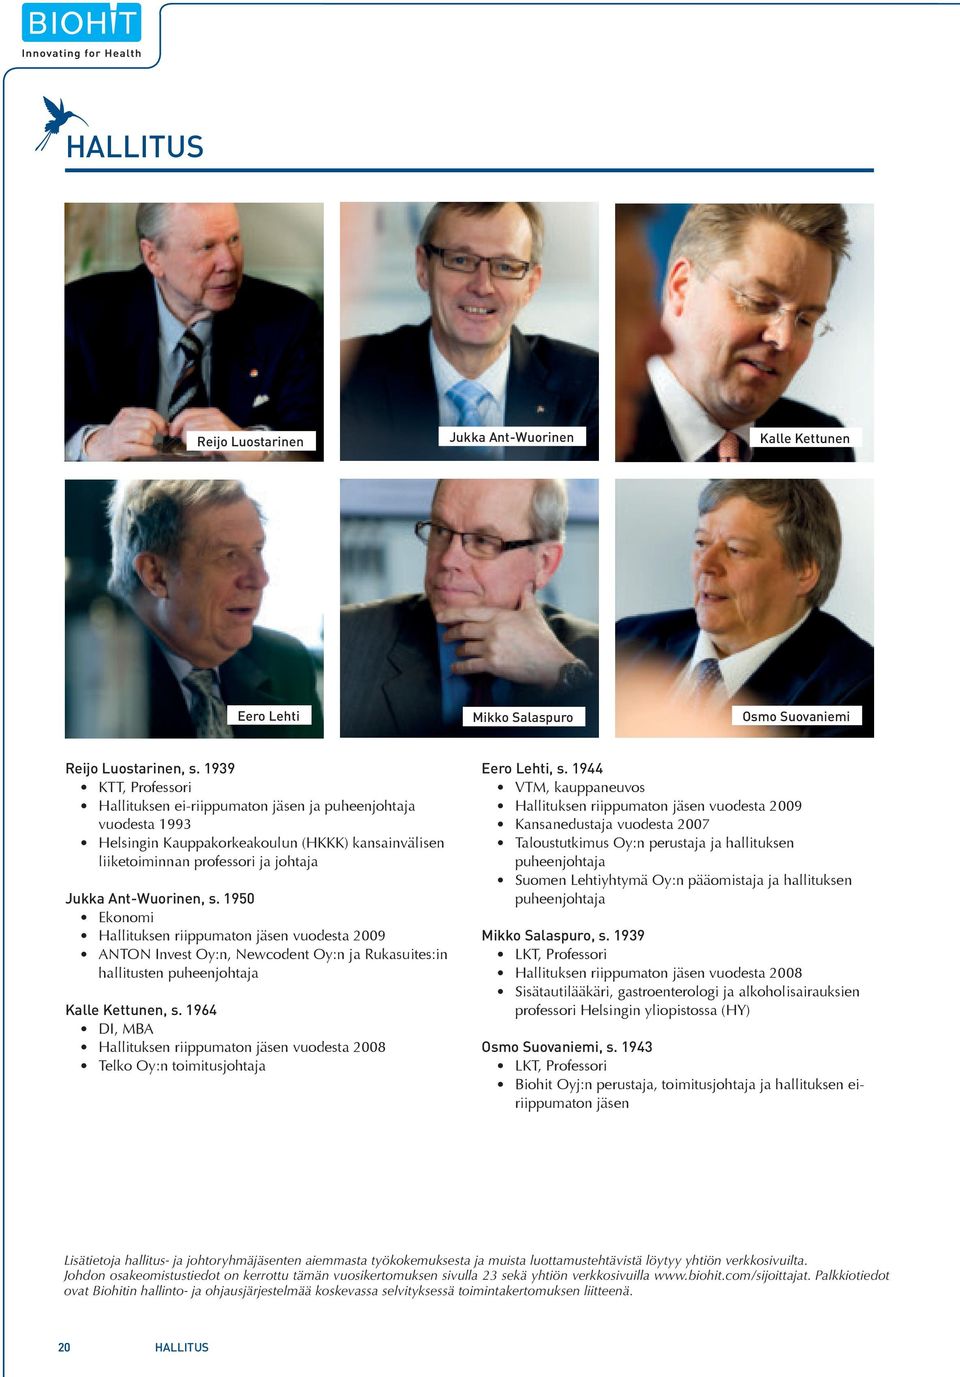 1950 Ekonomi Hallituksen riippumaton jäsen vuodesta 2009 ANTON Invest Oy:n, Newcodent Oy:n ja Rukasuites:in hallitusten puheenjohtaja Kalle Kettunen, s.